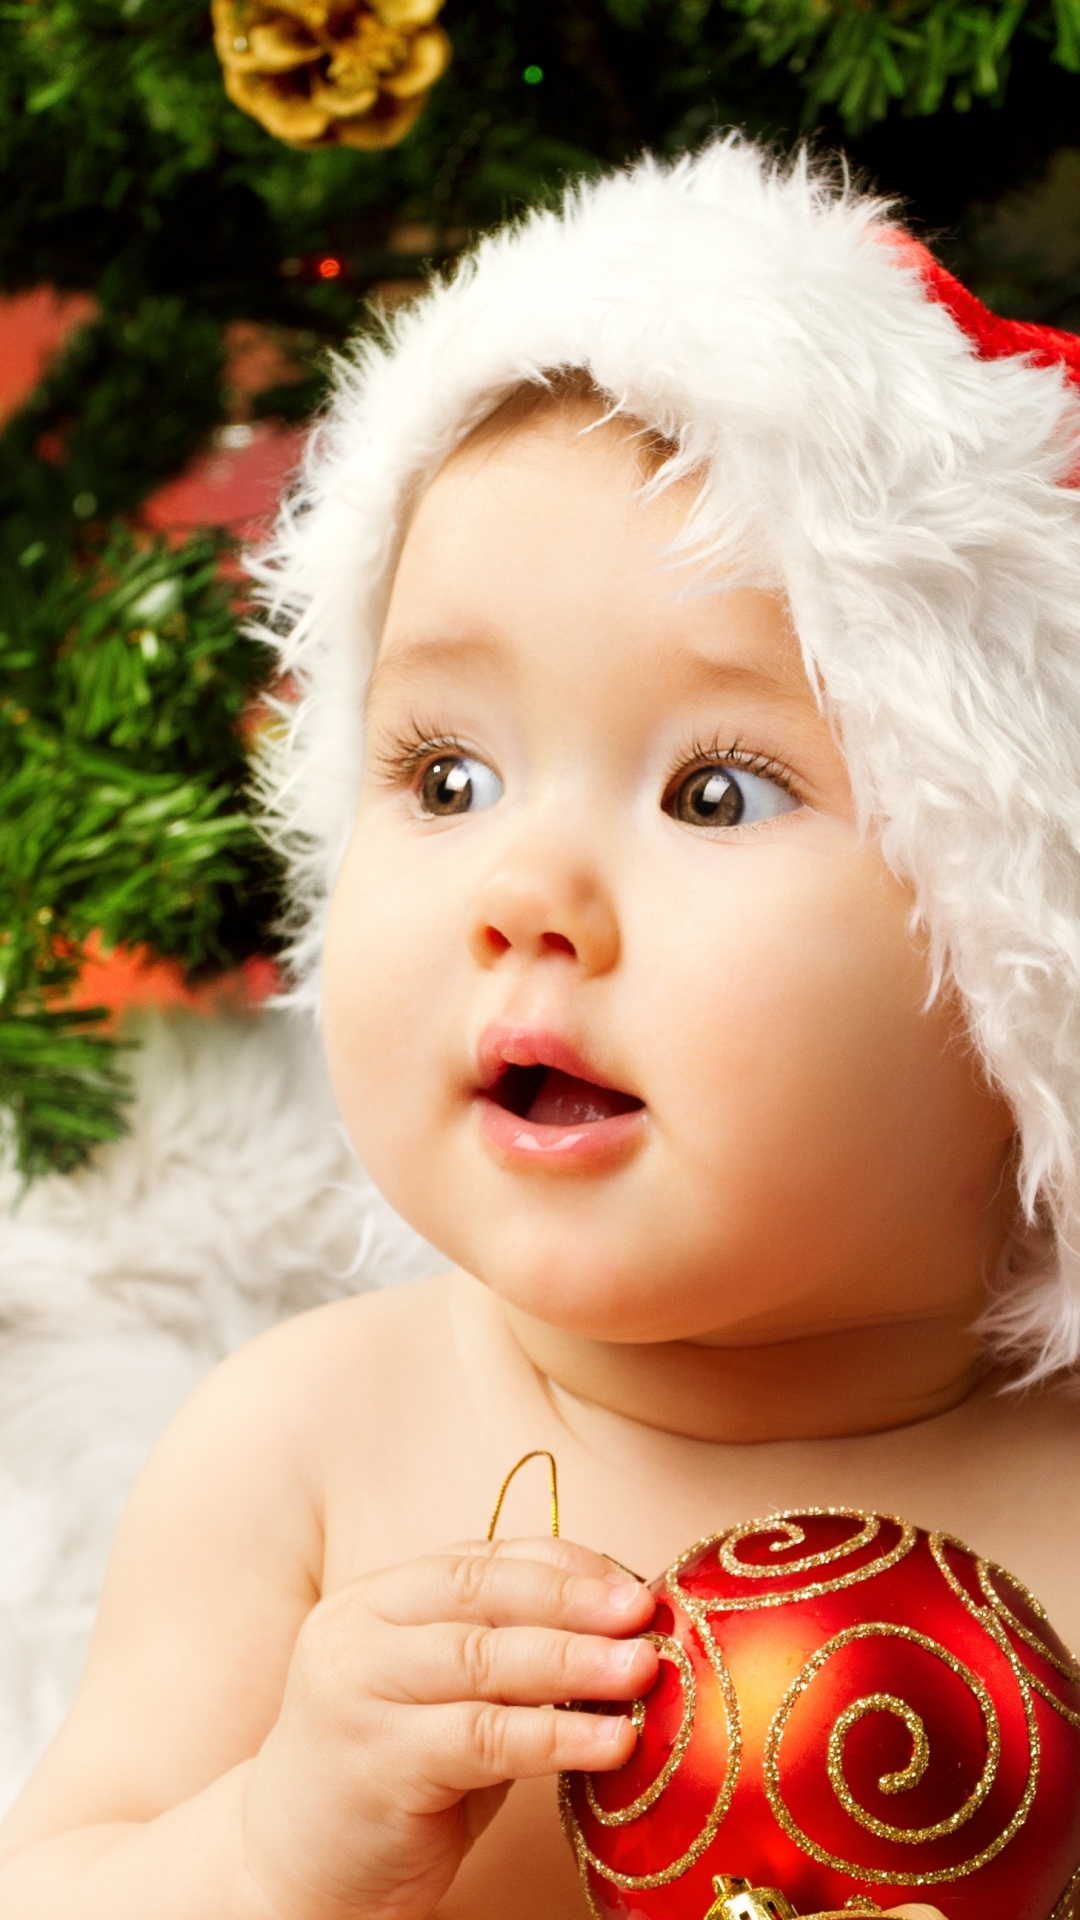 El Día De Navidad, Bebé, la Lindura, Navidad, Adorno de Navidad. Wallpaper in 1080x1920 Resolution